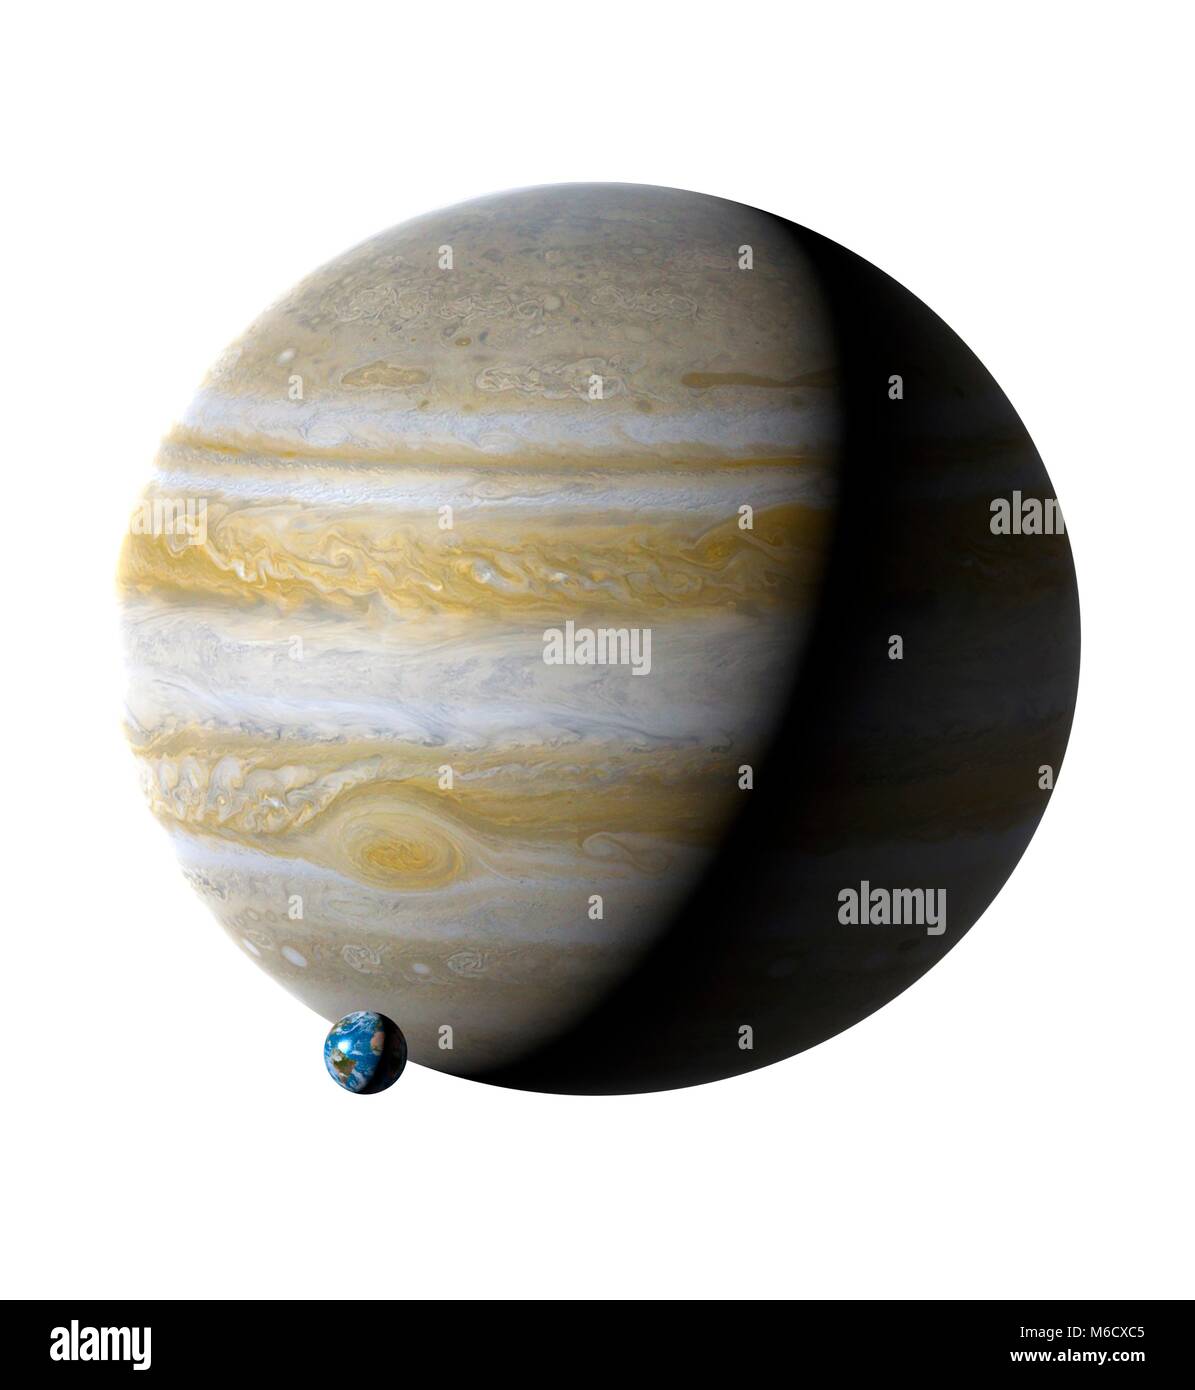 Per il confronto di immagini delle dimensioni della Terra (sinistra) con il pianeta Giove. Giove è il quinto pianeta dal sole, con una distanza media da esso di 5,2 volte la distanza Earth-Sun. Essendo un fluido mondo di principalmente idrogeno ed elio, gli astronomi etichetta (lungo con Saturno) un gigante di gas. Con un diametro di 11,2 volte quella della Terra, Giove è il sistema solare più grande del pianeta. Foto Stock